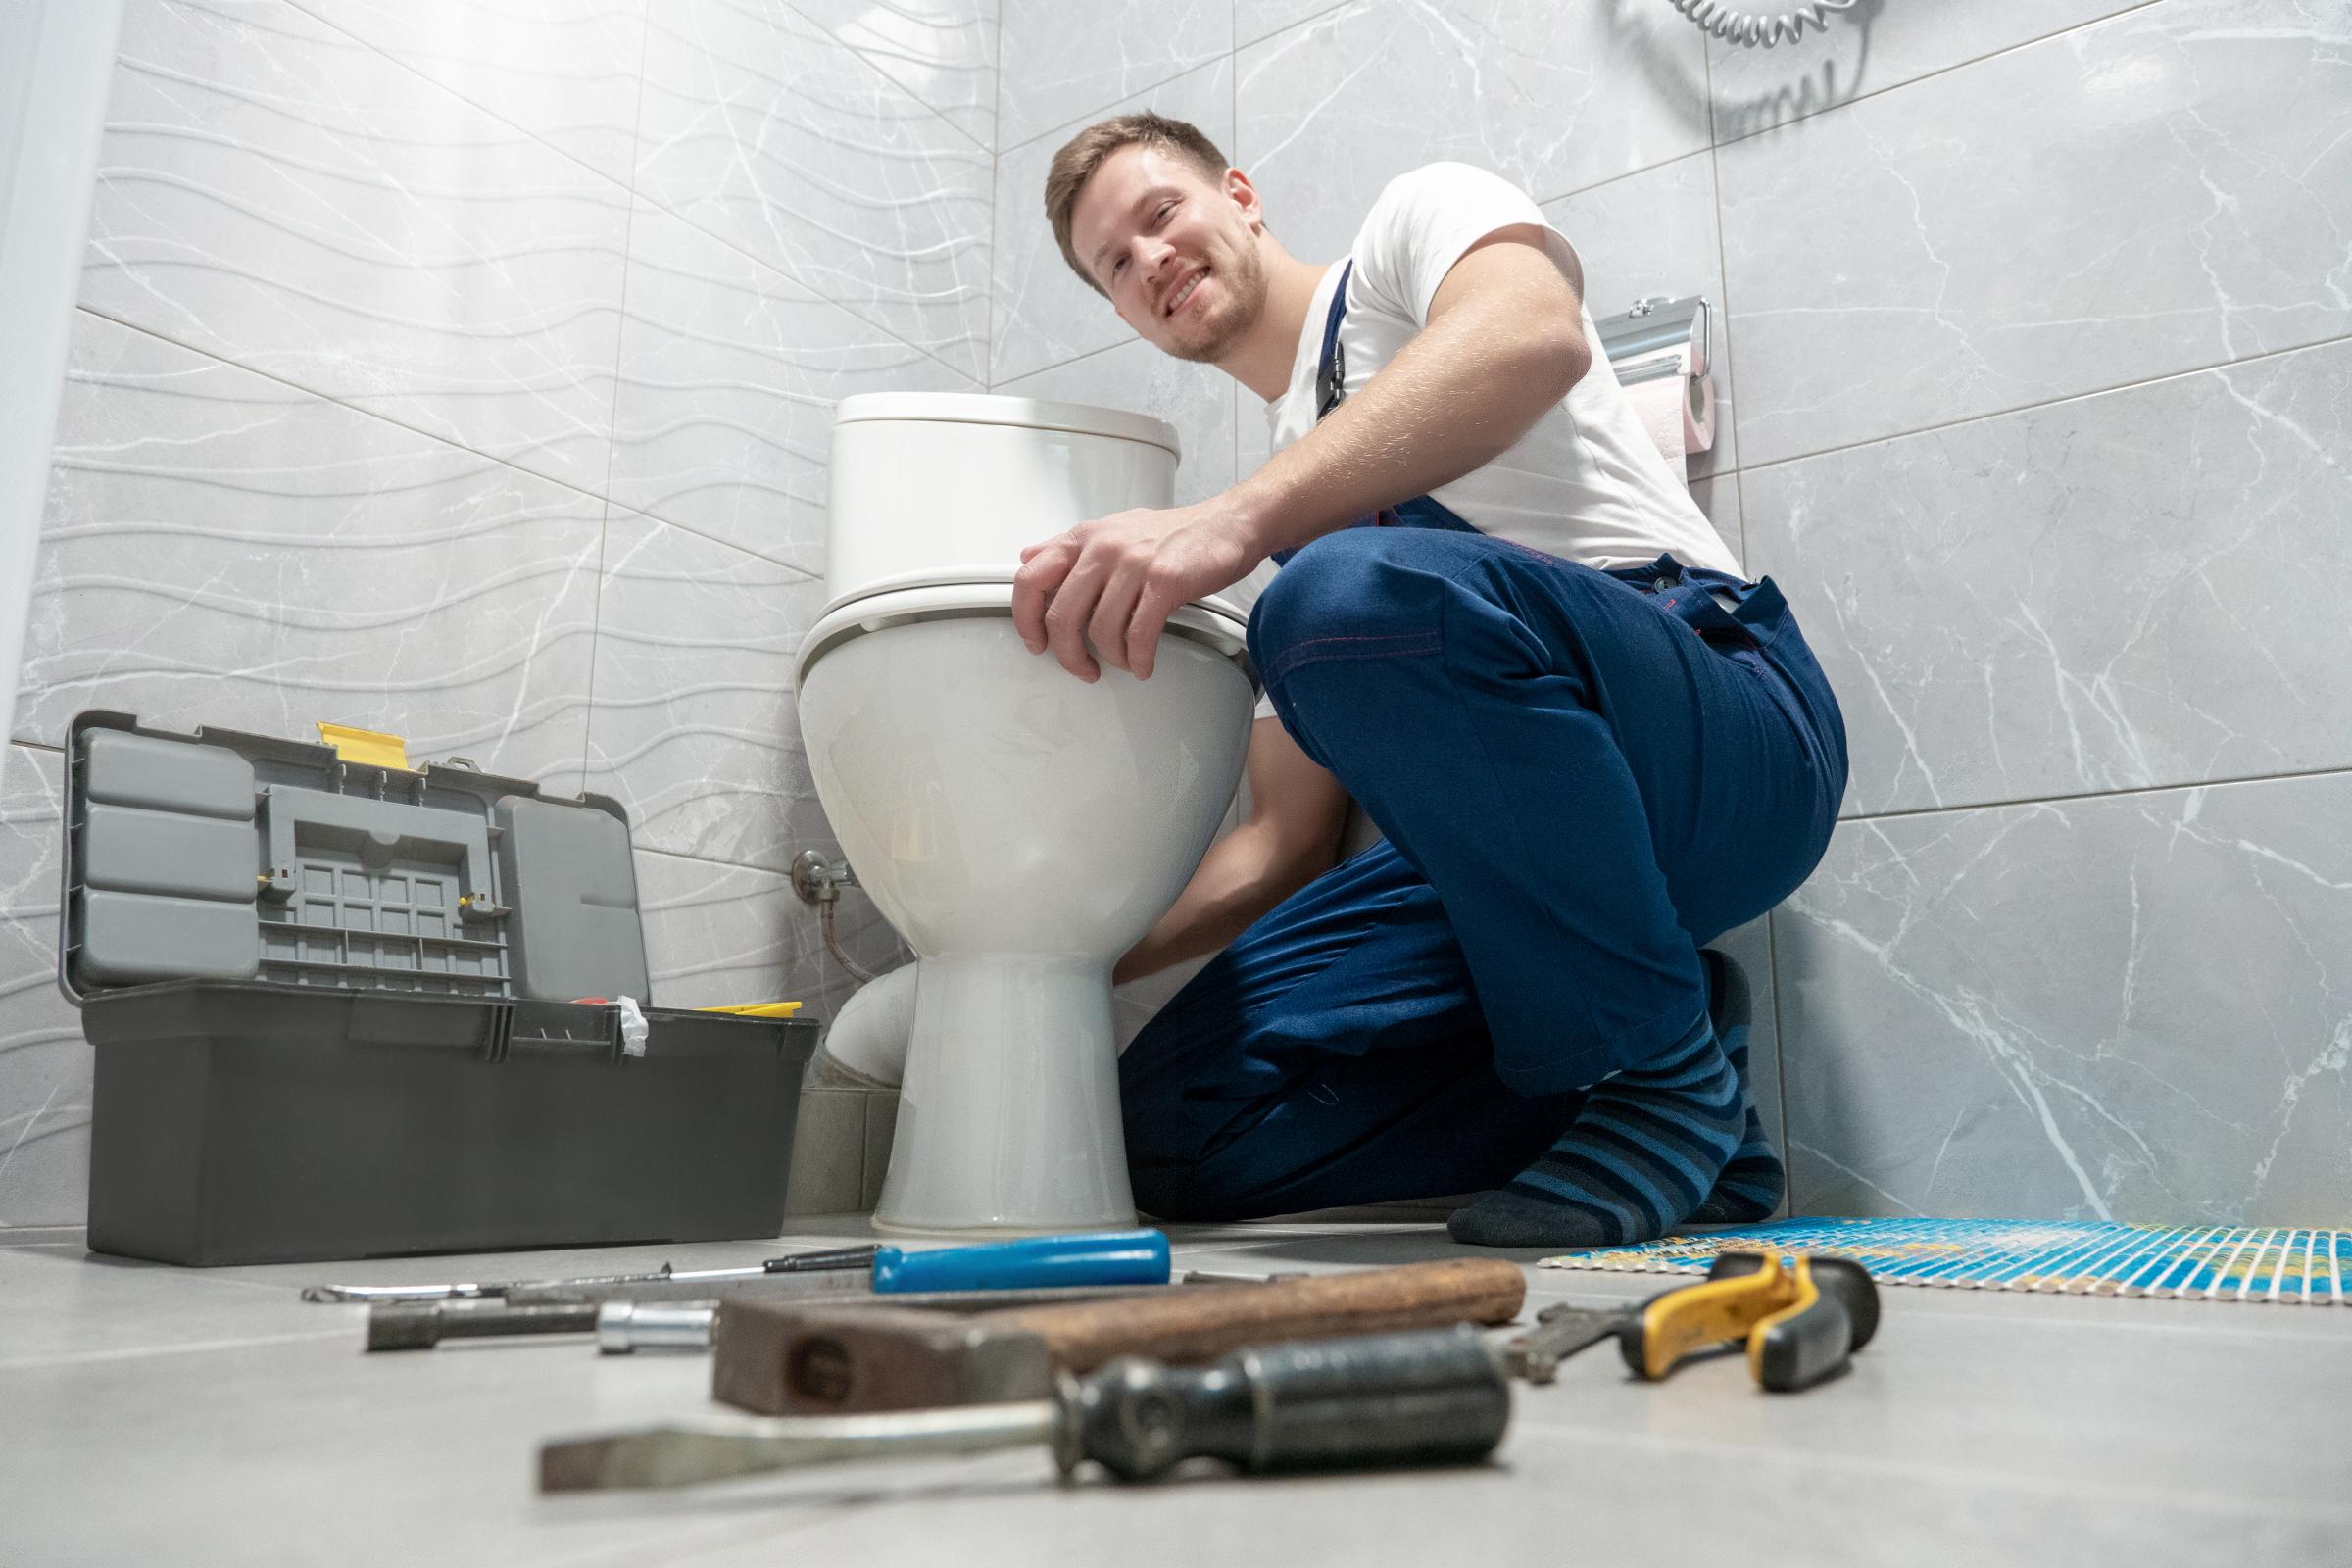 smiling man plumber in uniform repairing toilet bowl using instrument kit looks happy professional repair service..